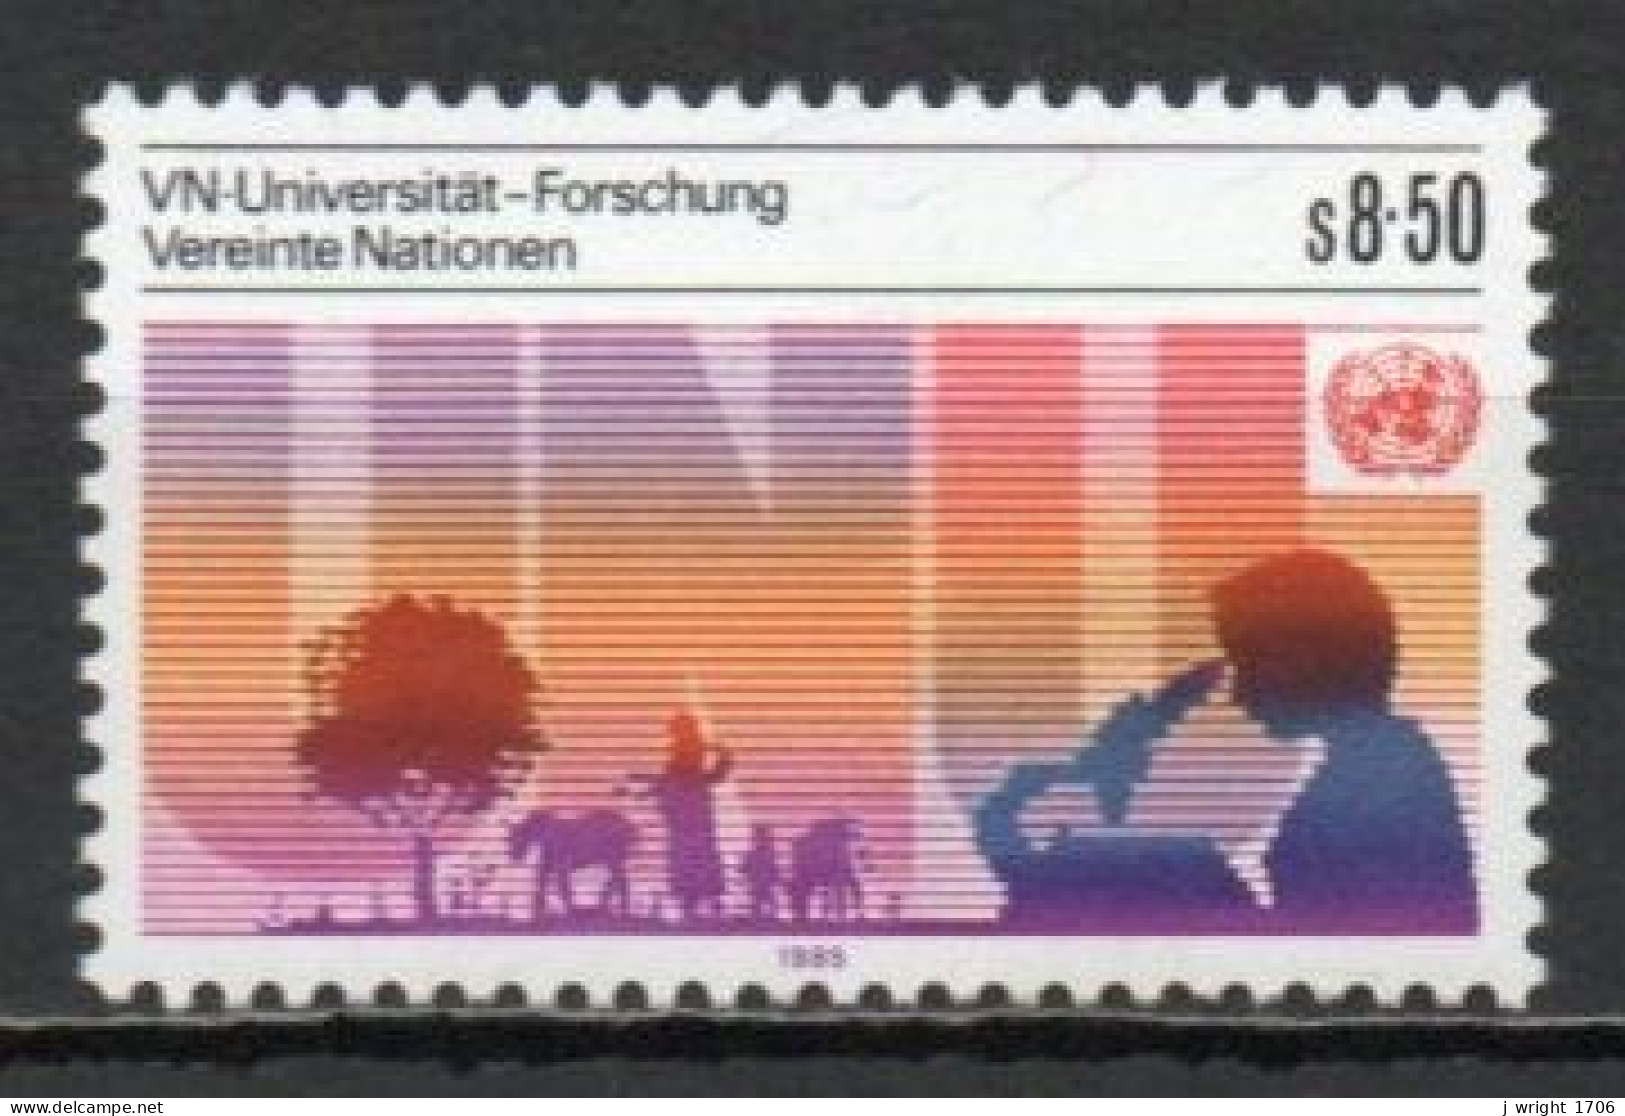 UN/Vienna, 1985, UN University, 8.50S, MNH - Ongebruikt